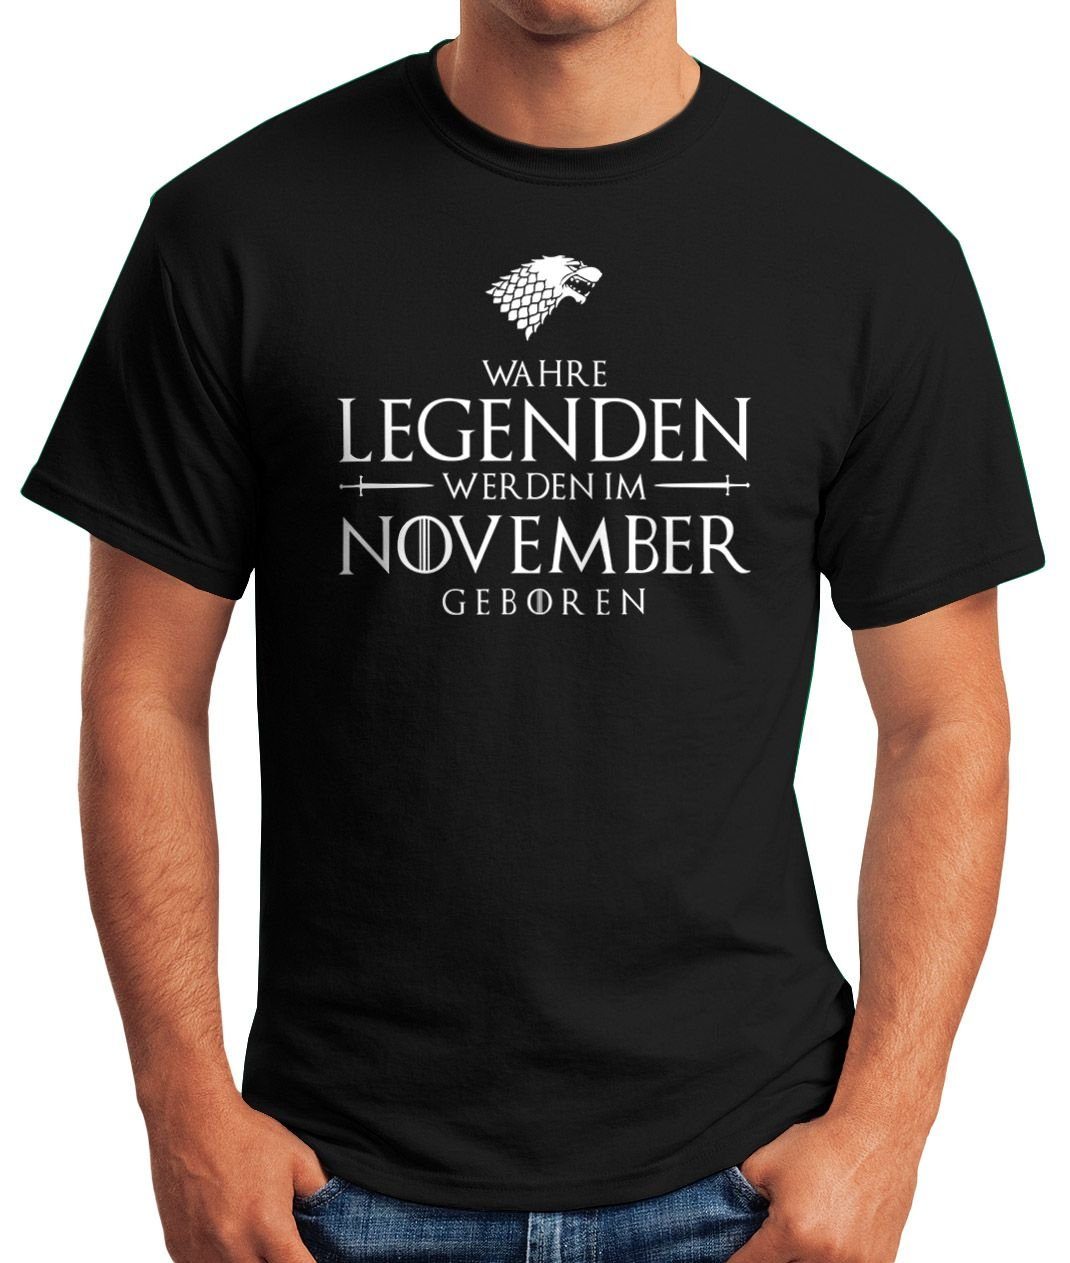 Object] T-Shirt Print Print-Shirt schwarz Herren Fun-Shirt im Wahre [object geboren werden Moonworks® MoonWorks November Legenden mit